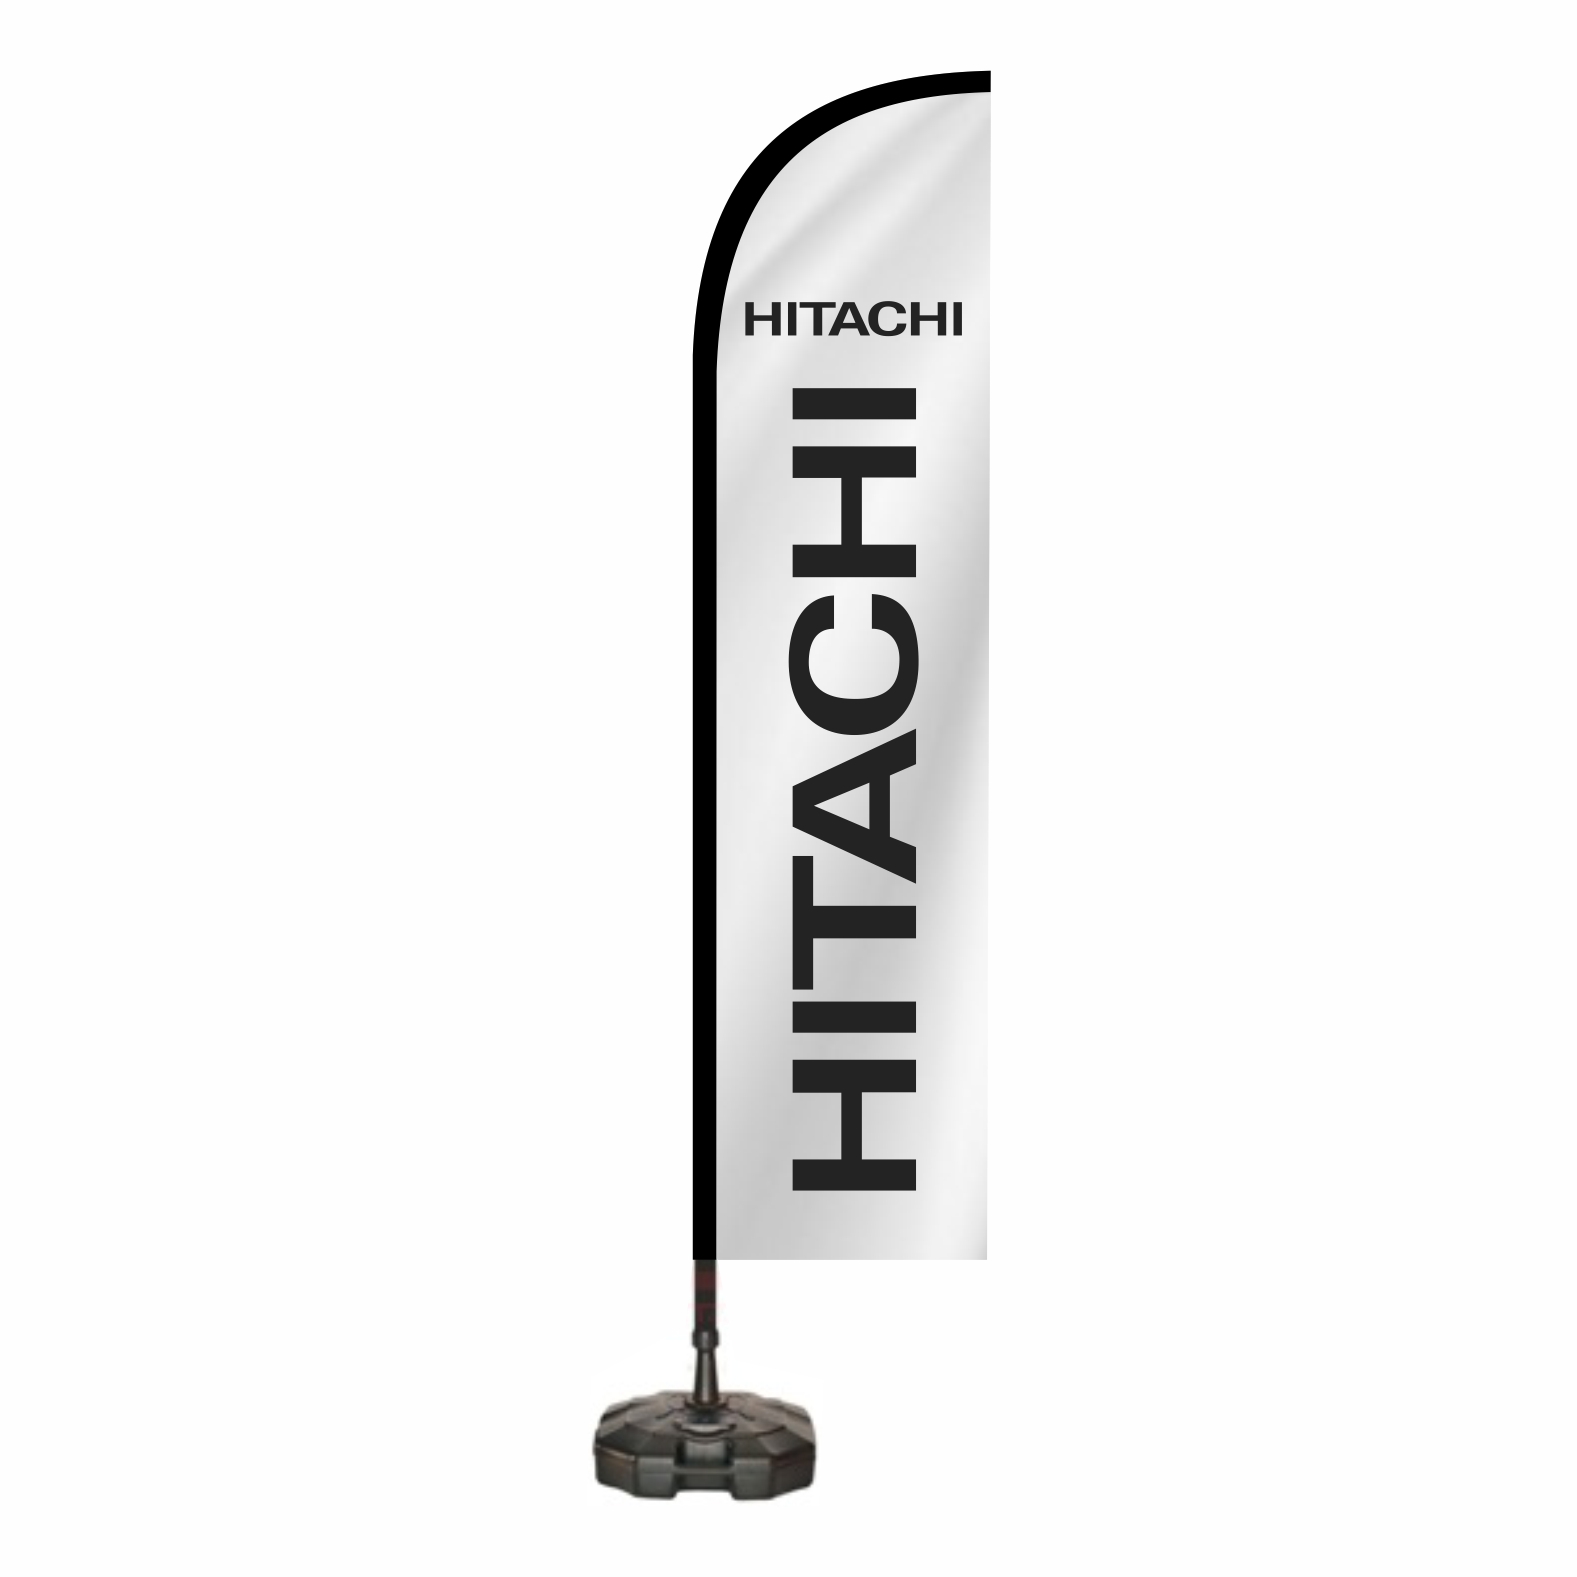 Hitachi Reklam Bayra Ne Demektir